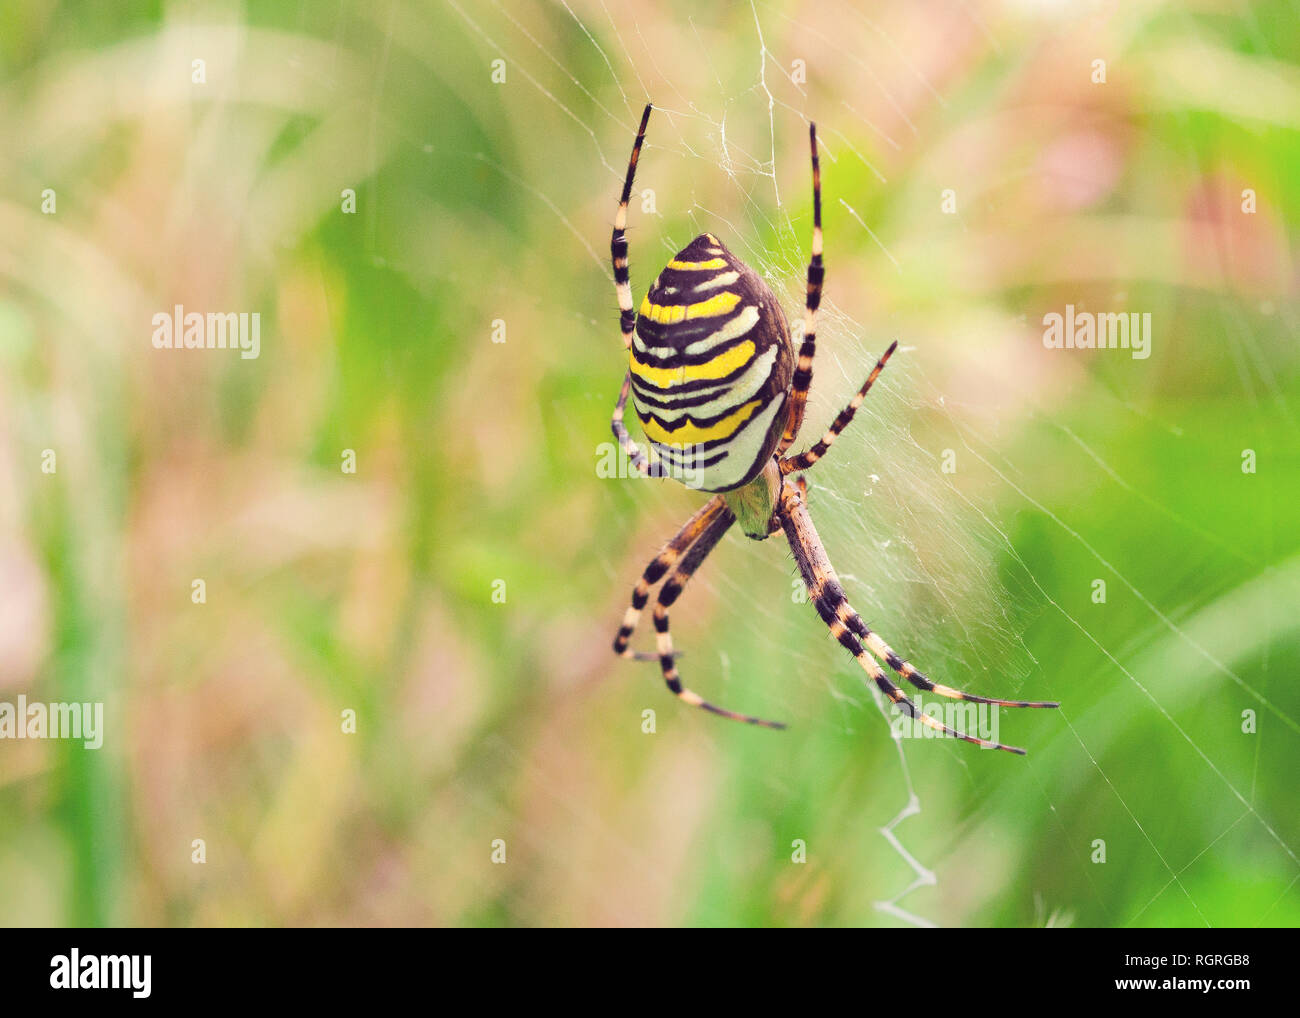 Wasp Spider, Europe, Argiope bruennichi Stock Photo